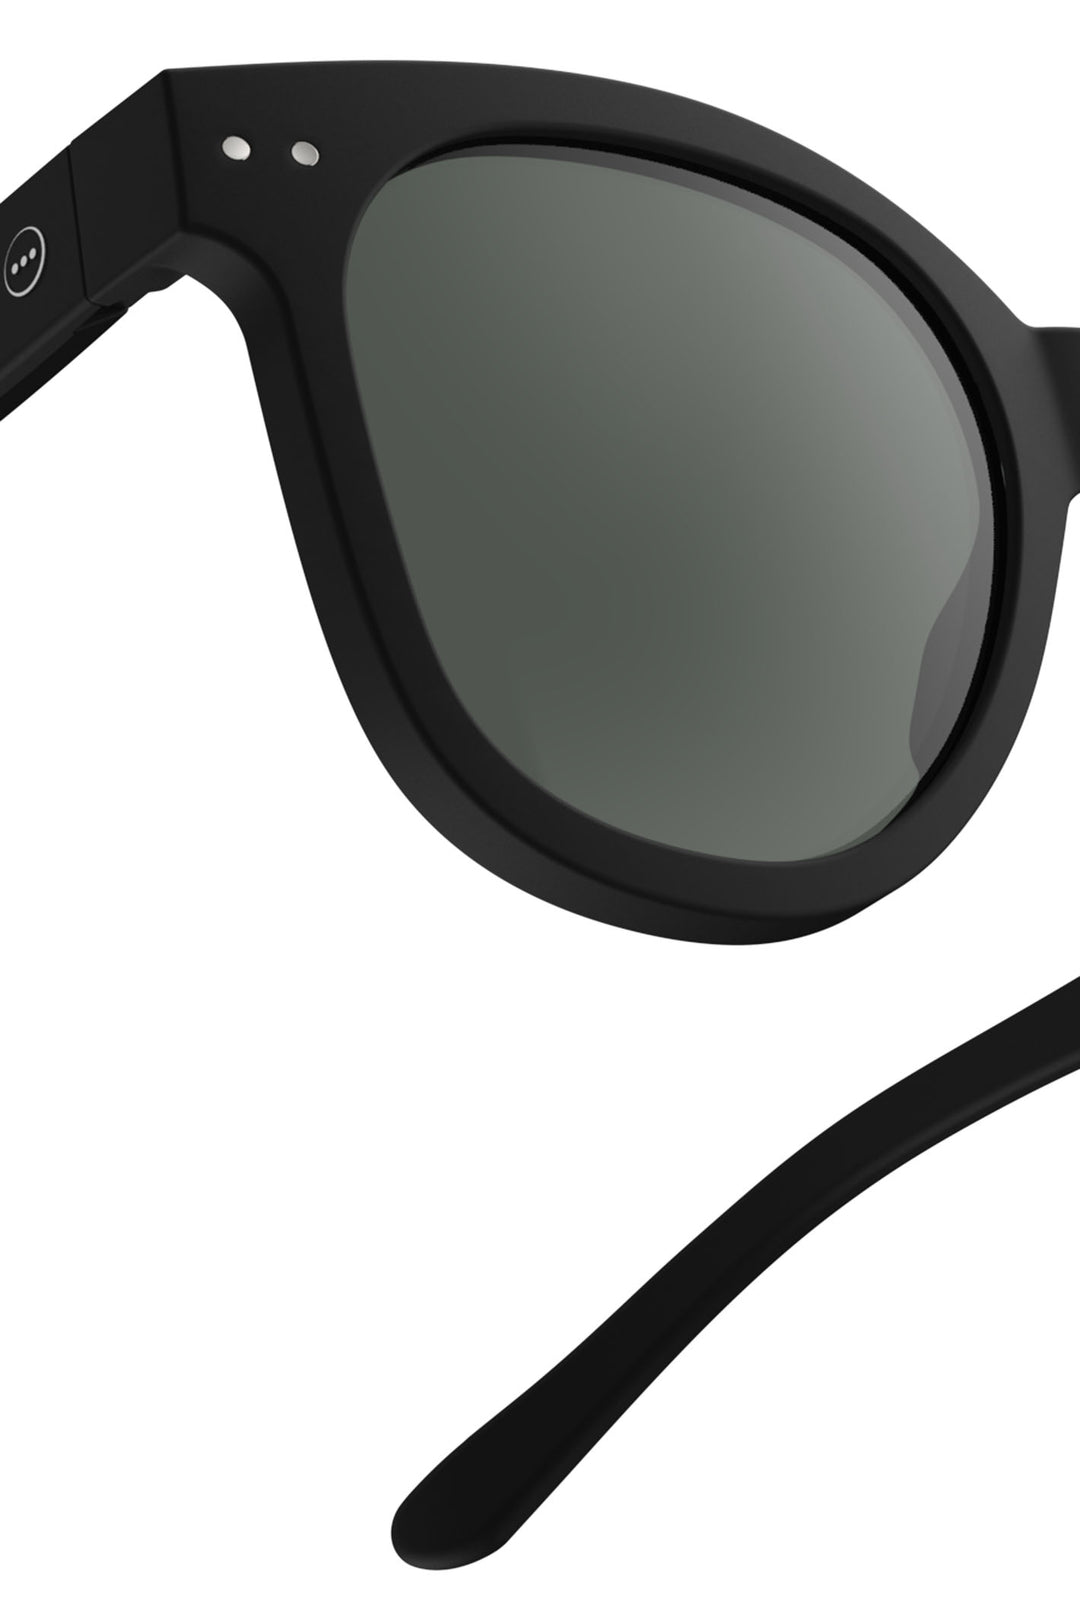 Izipizi Paris SLMSNC01 Black Sunglasses - Olivia Grace Fashion